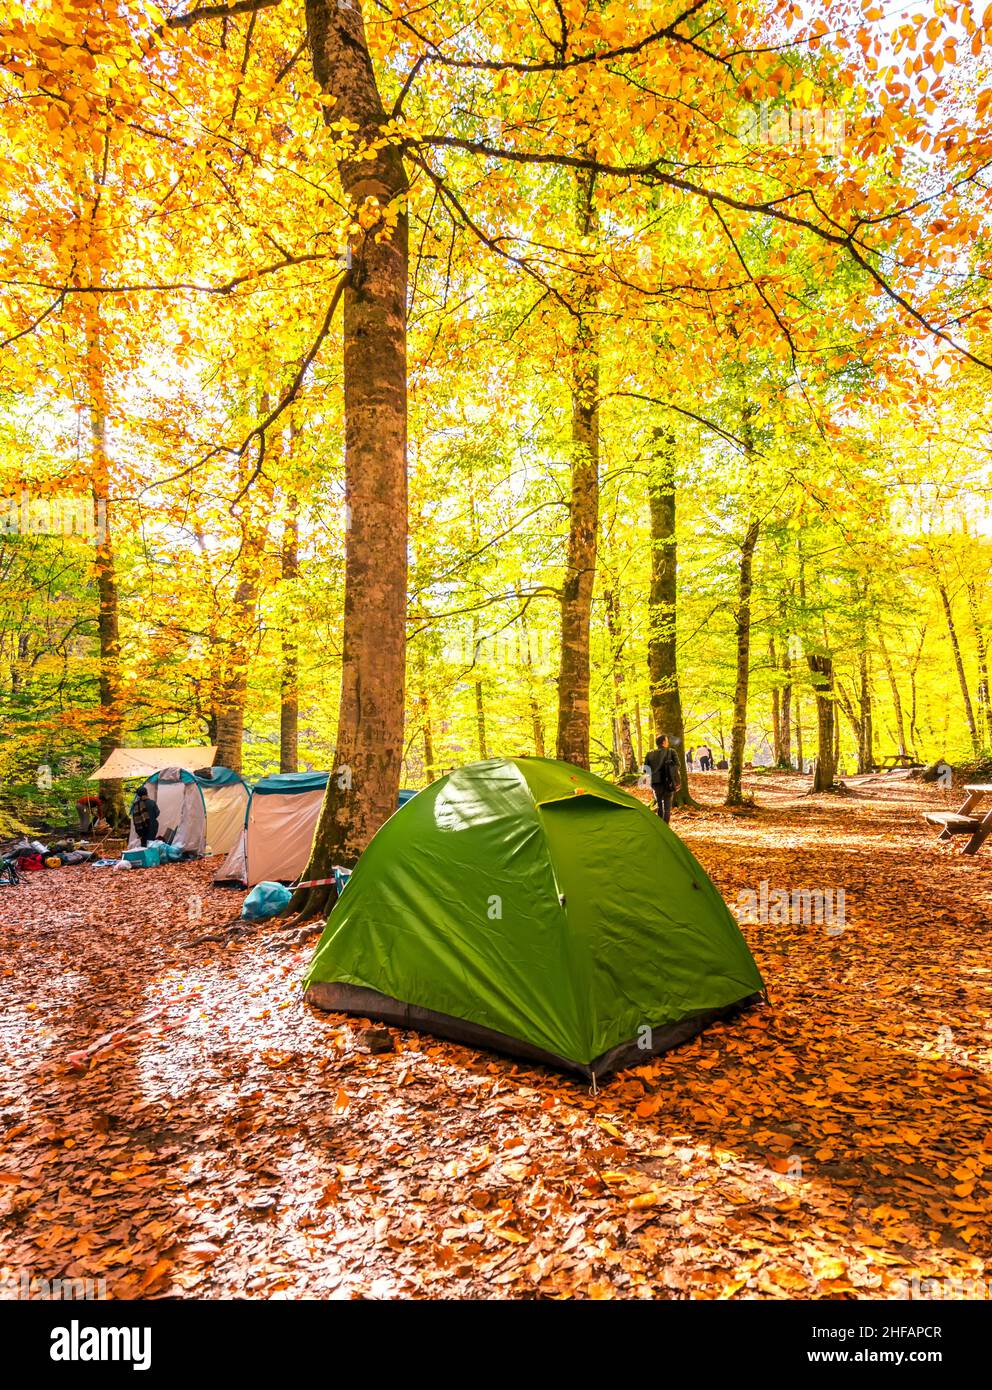 Schöner Herbstblick mit grünem Campingzelt im Yedigoller Nationalpark (sieben Seen). Bolu ist eine Provinz im Nordwesten der Türkei. Stockfoto